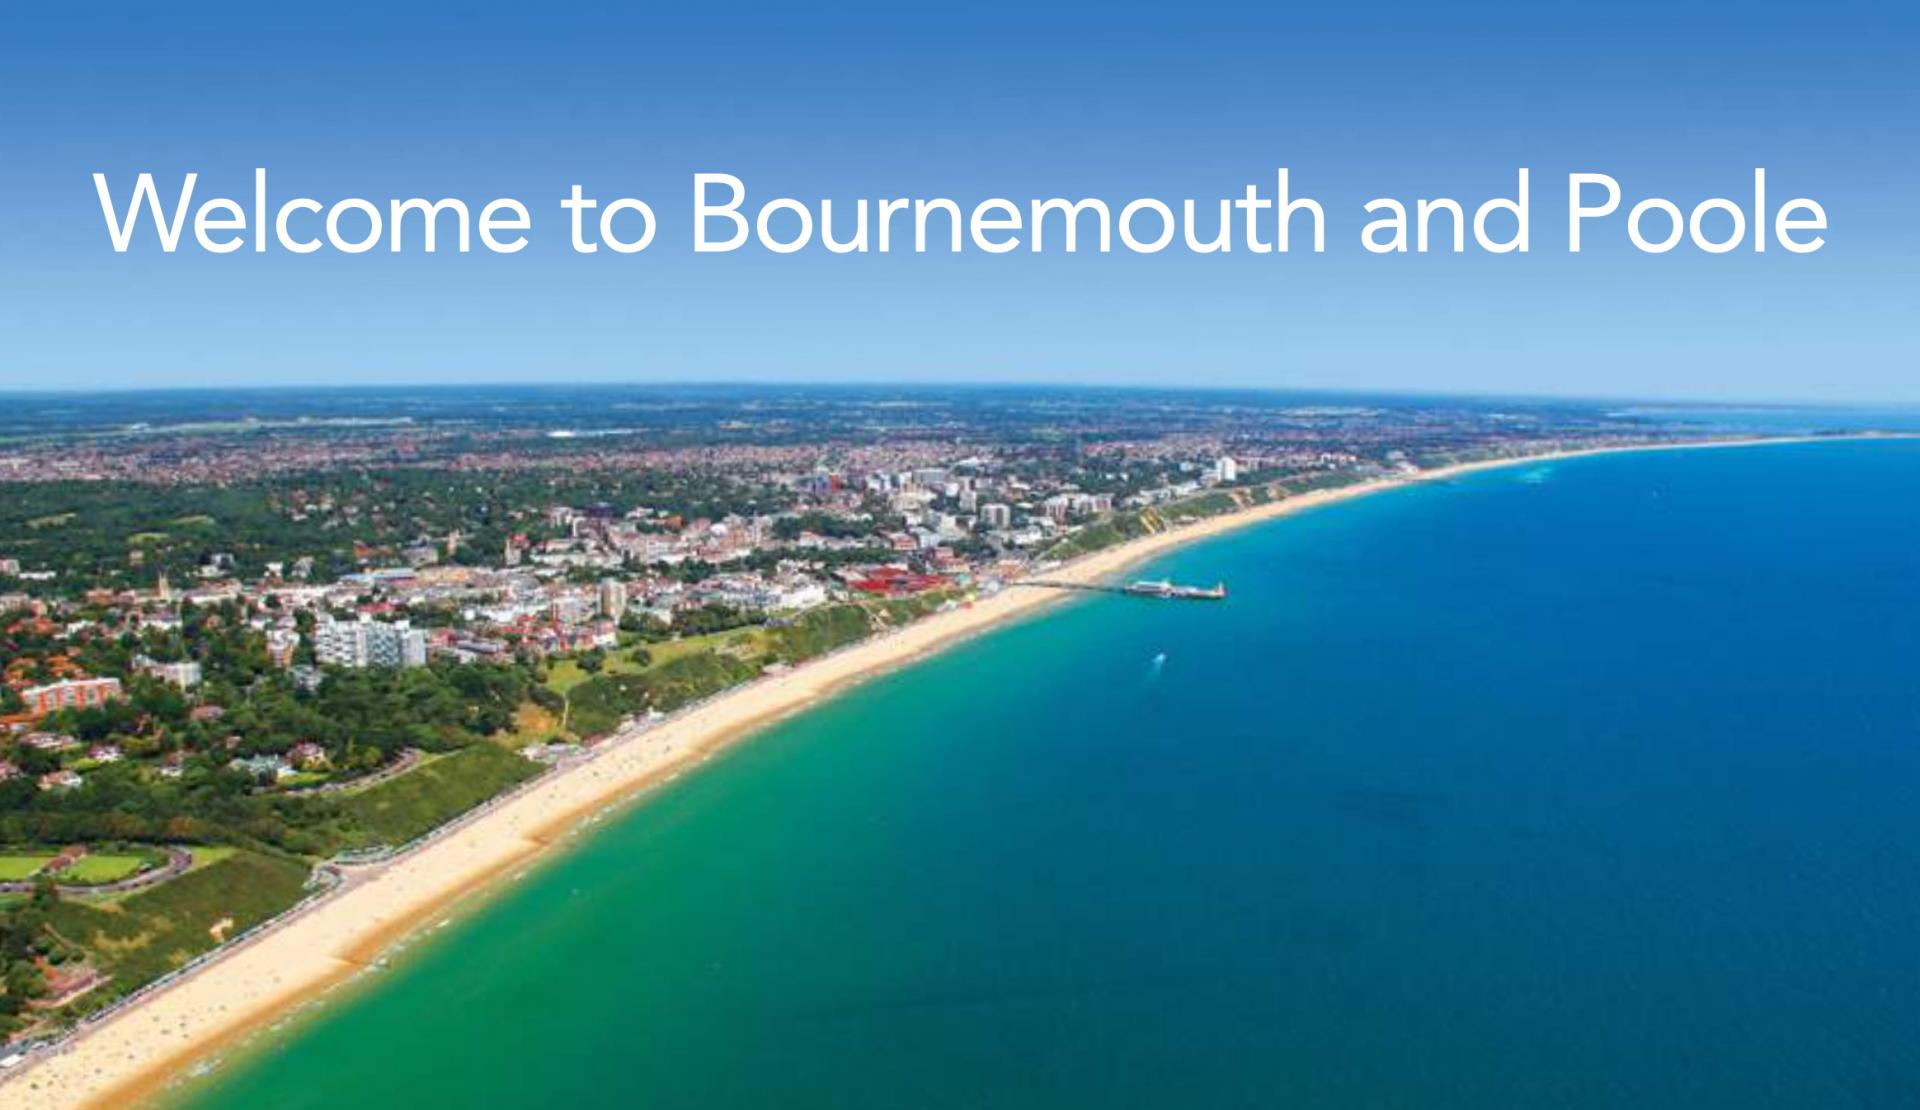 Bournemouth Regno Unito corso inglese 16-19 anni